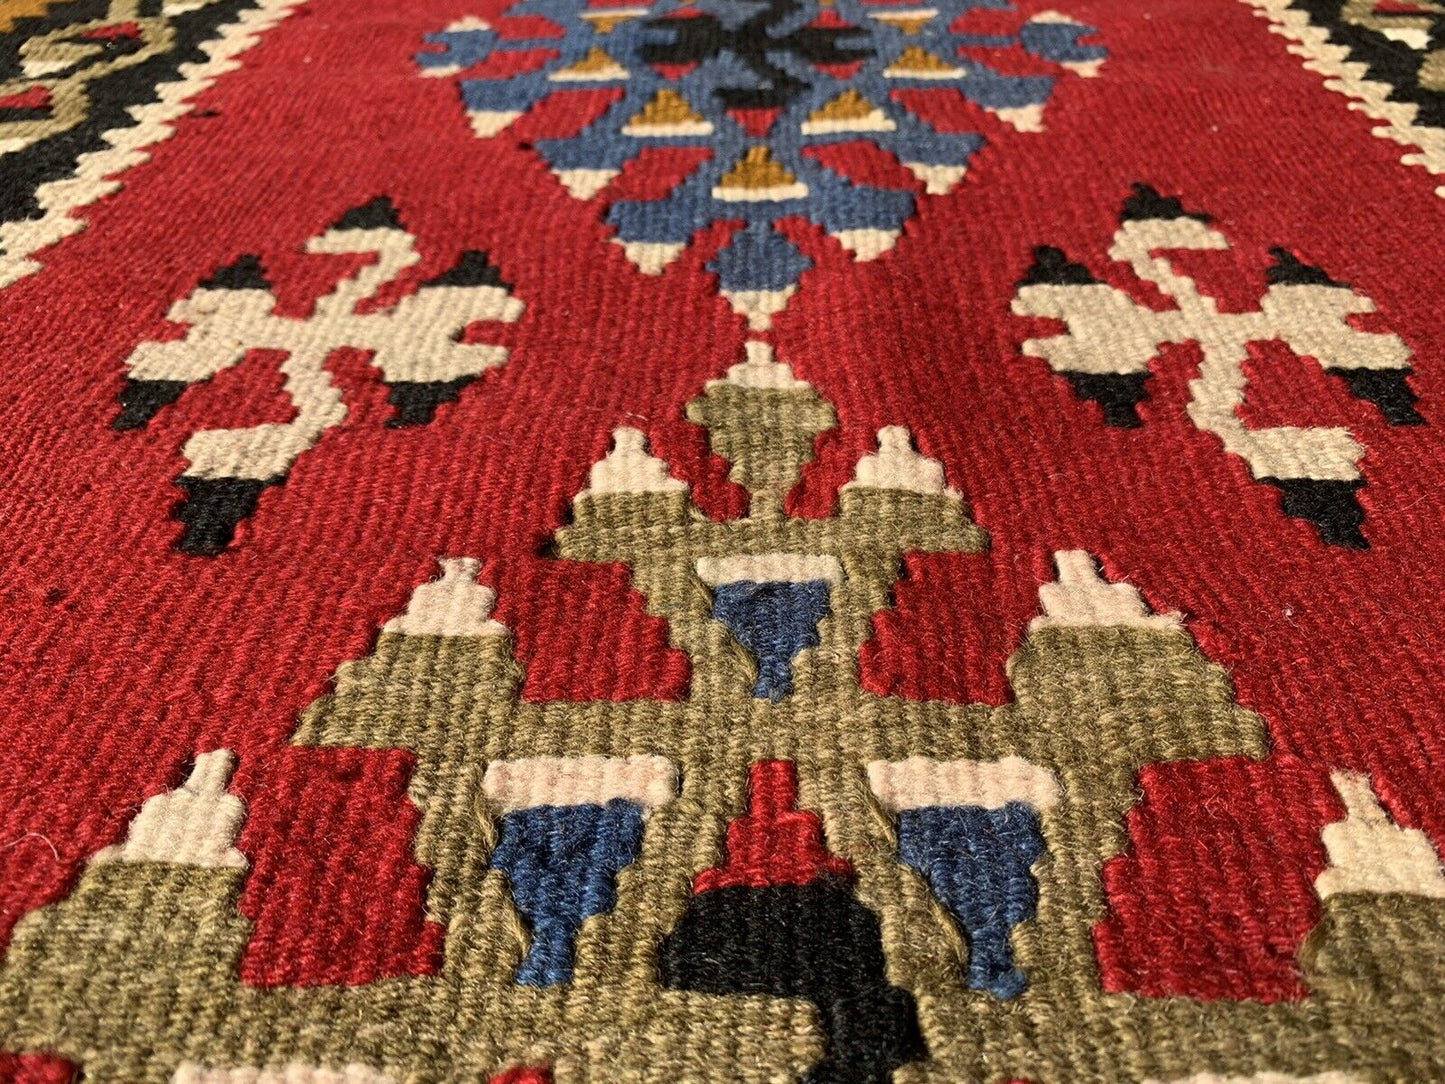 Traditional Turkish Kilim Rug,Vintage Kelim Teppich 186X90 Cm